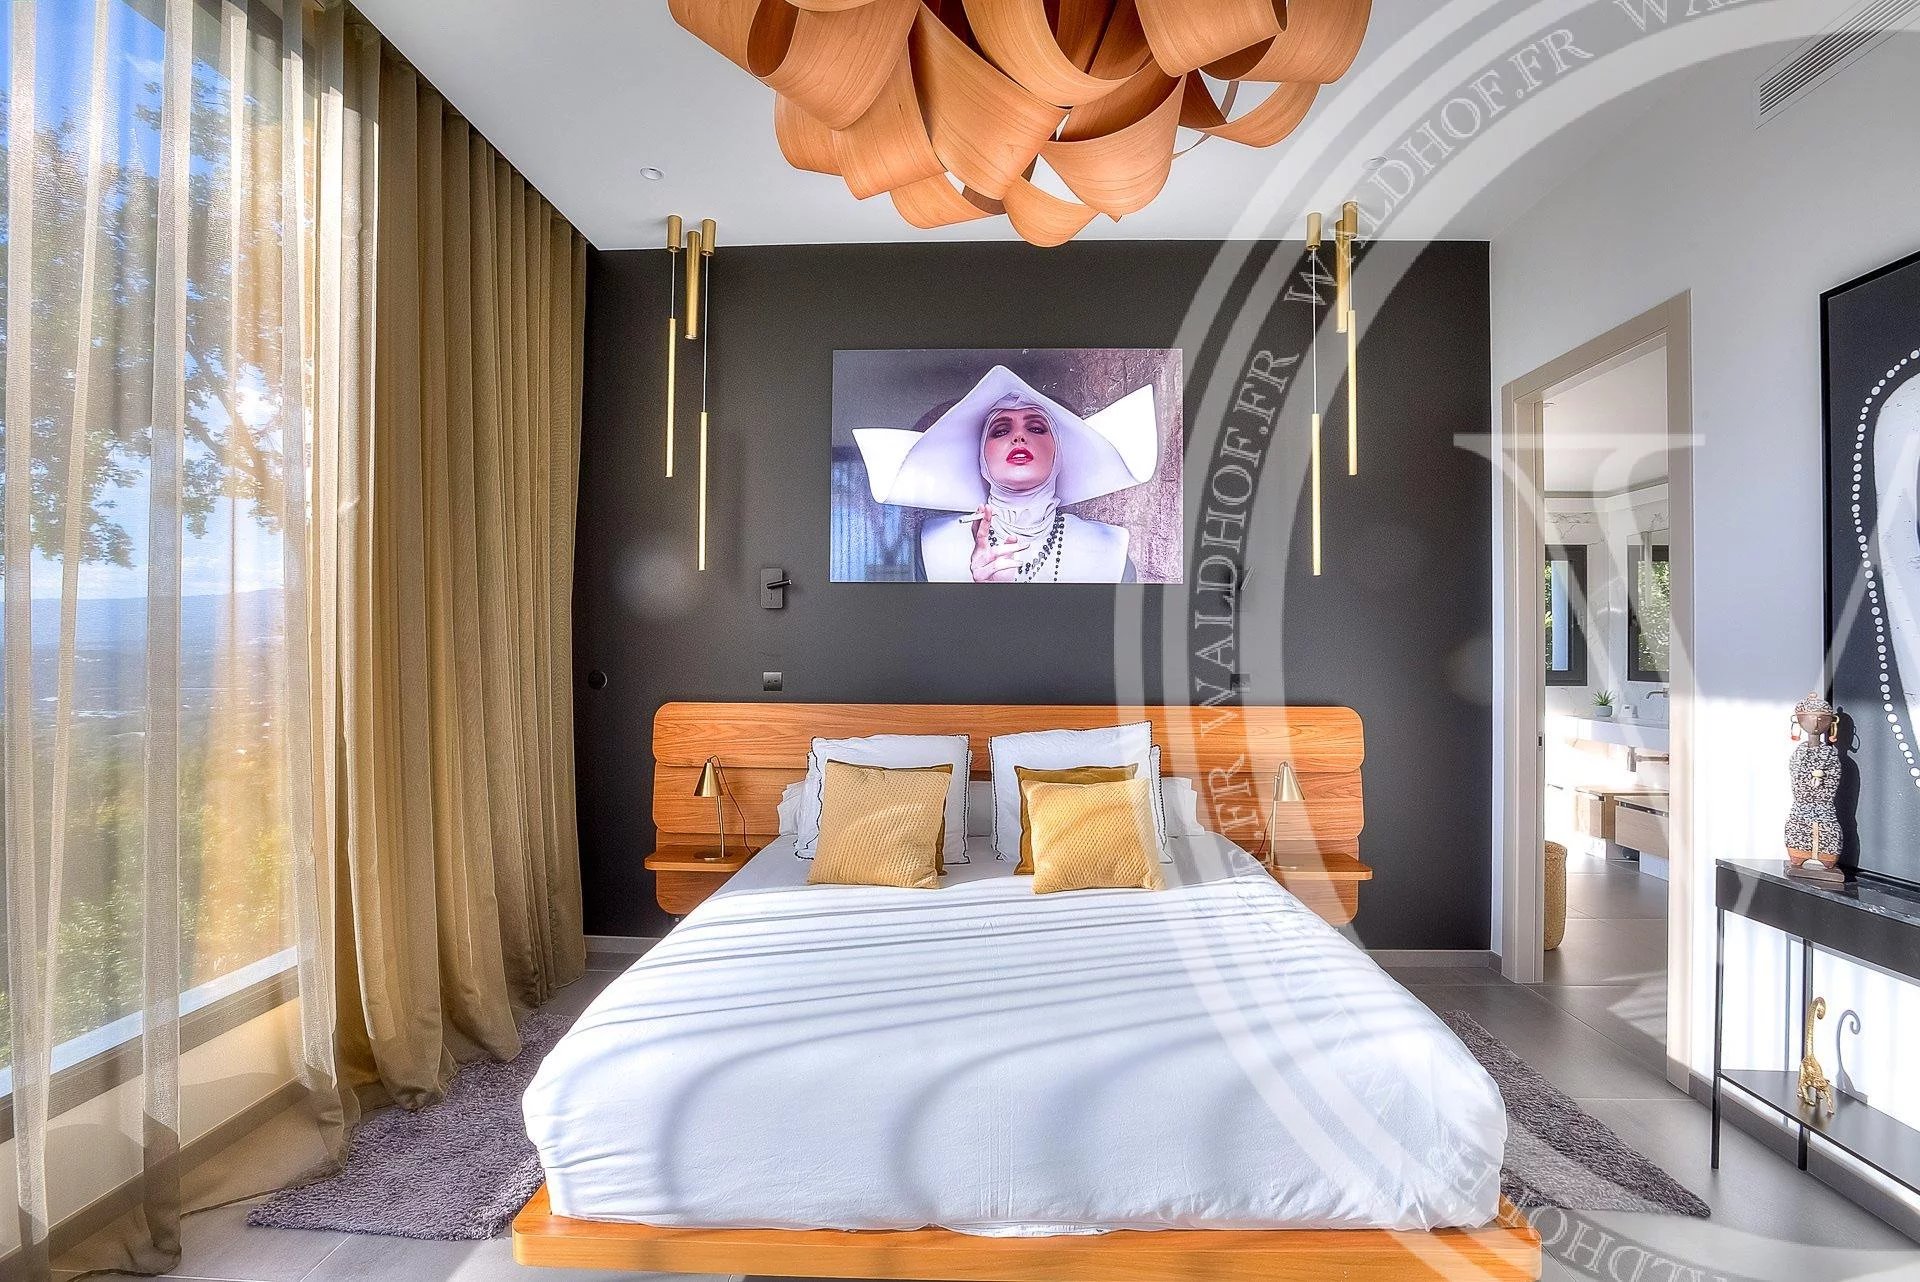 Luxurious 6 bedroom villa – MOUGINS